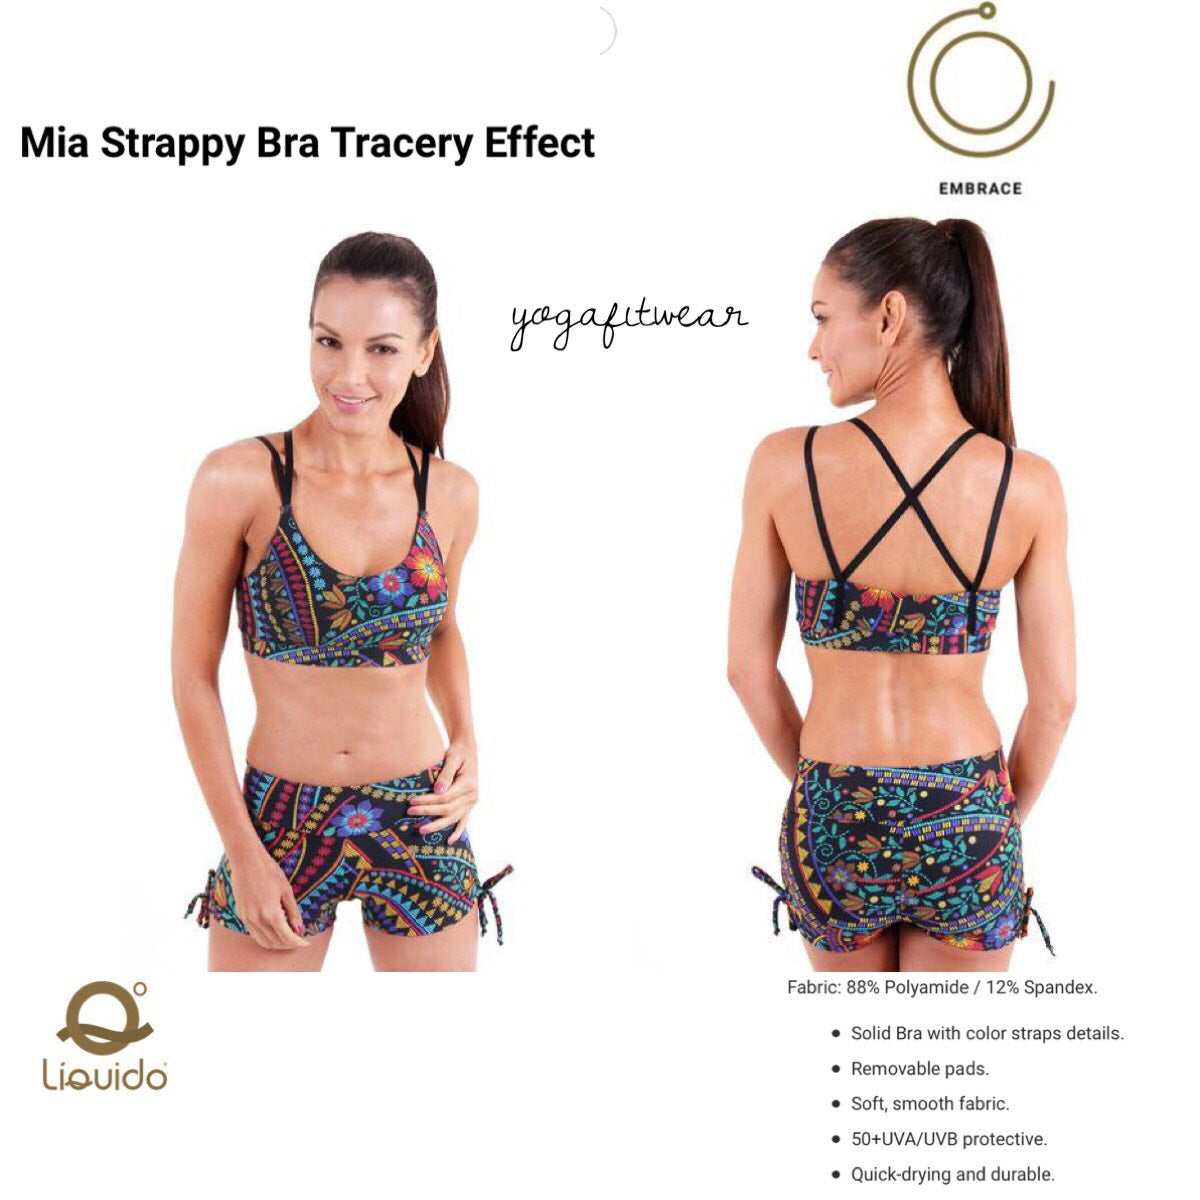 Liquido - Mia Strappy Bra Tracery Effect (LQ00497)